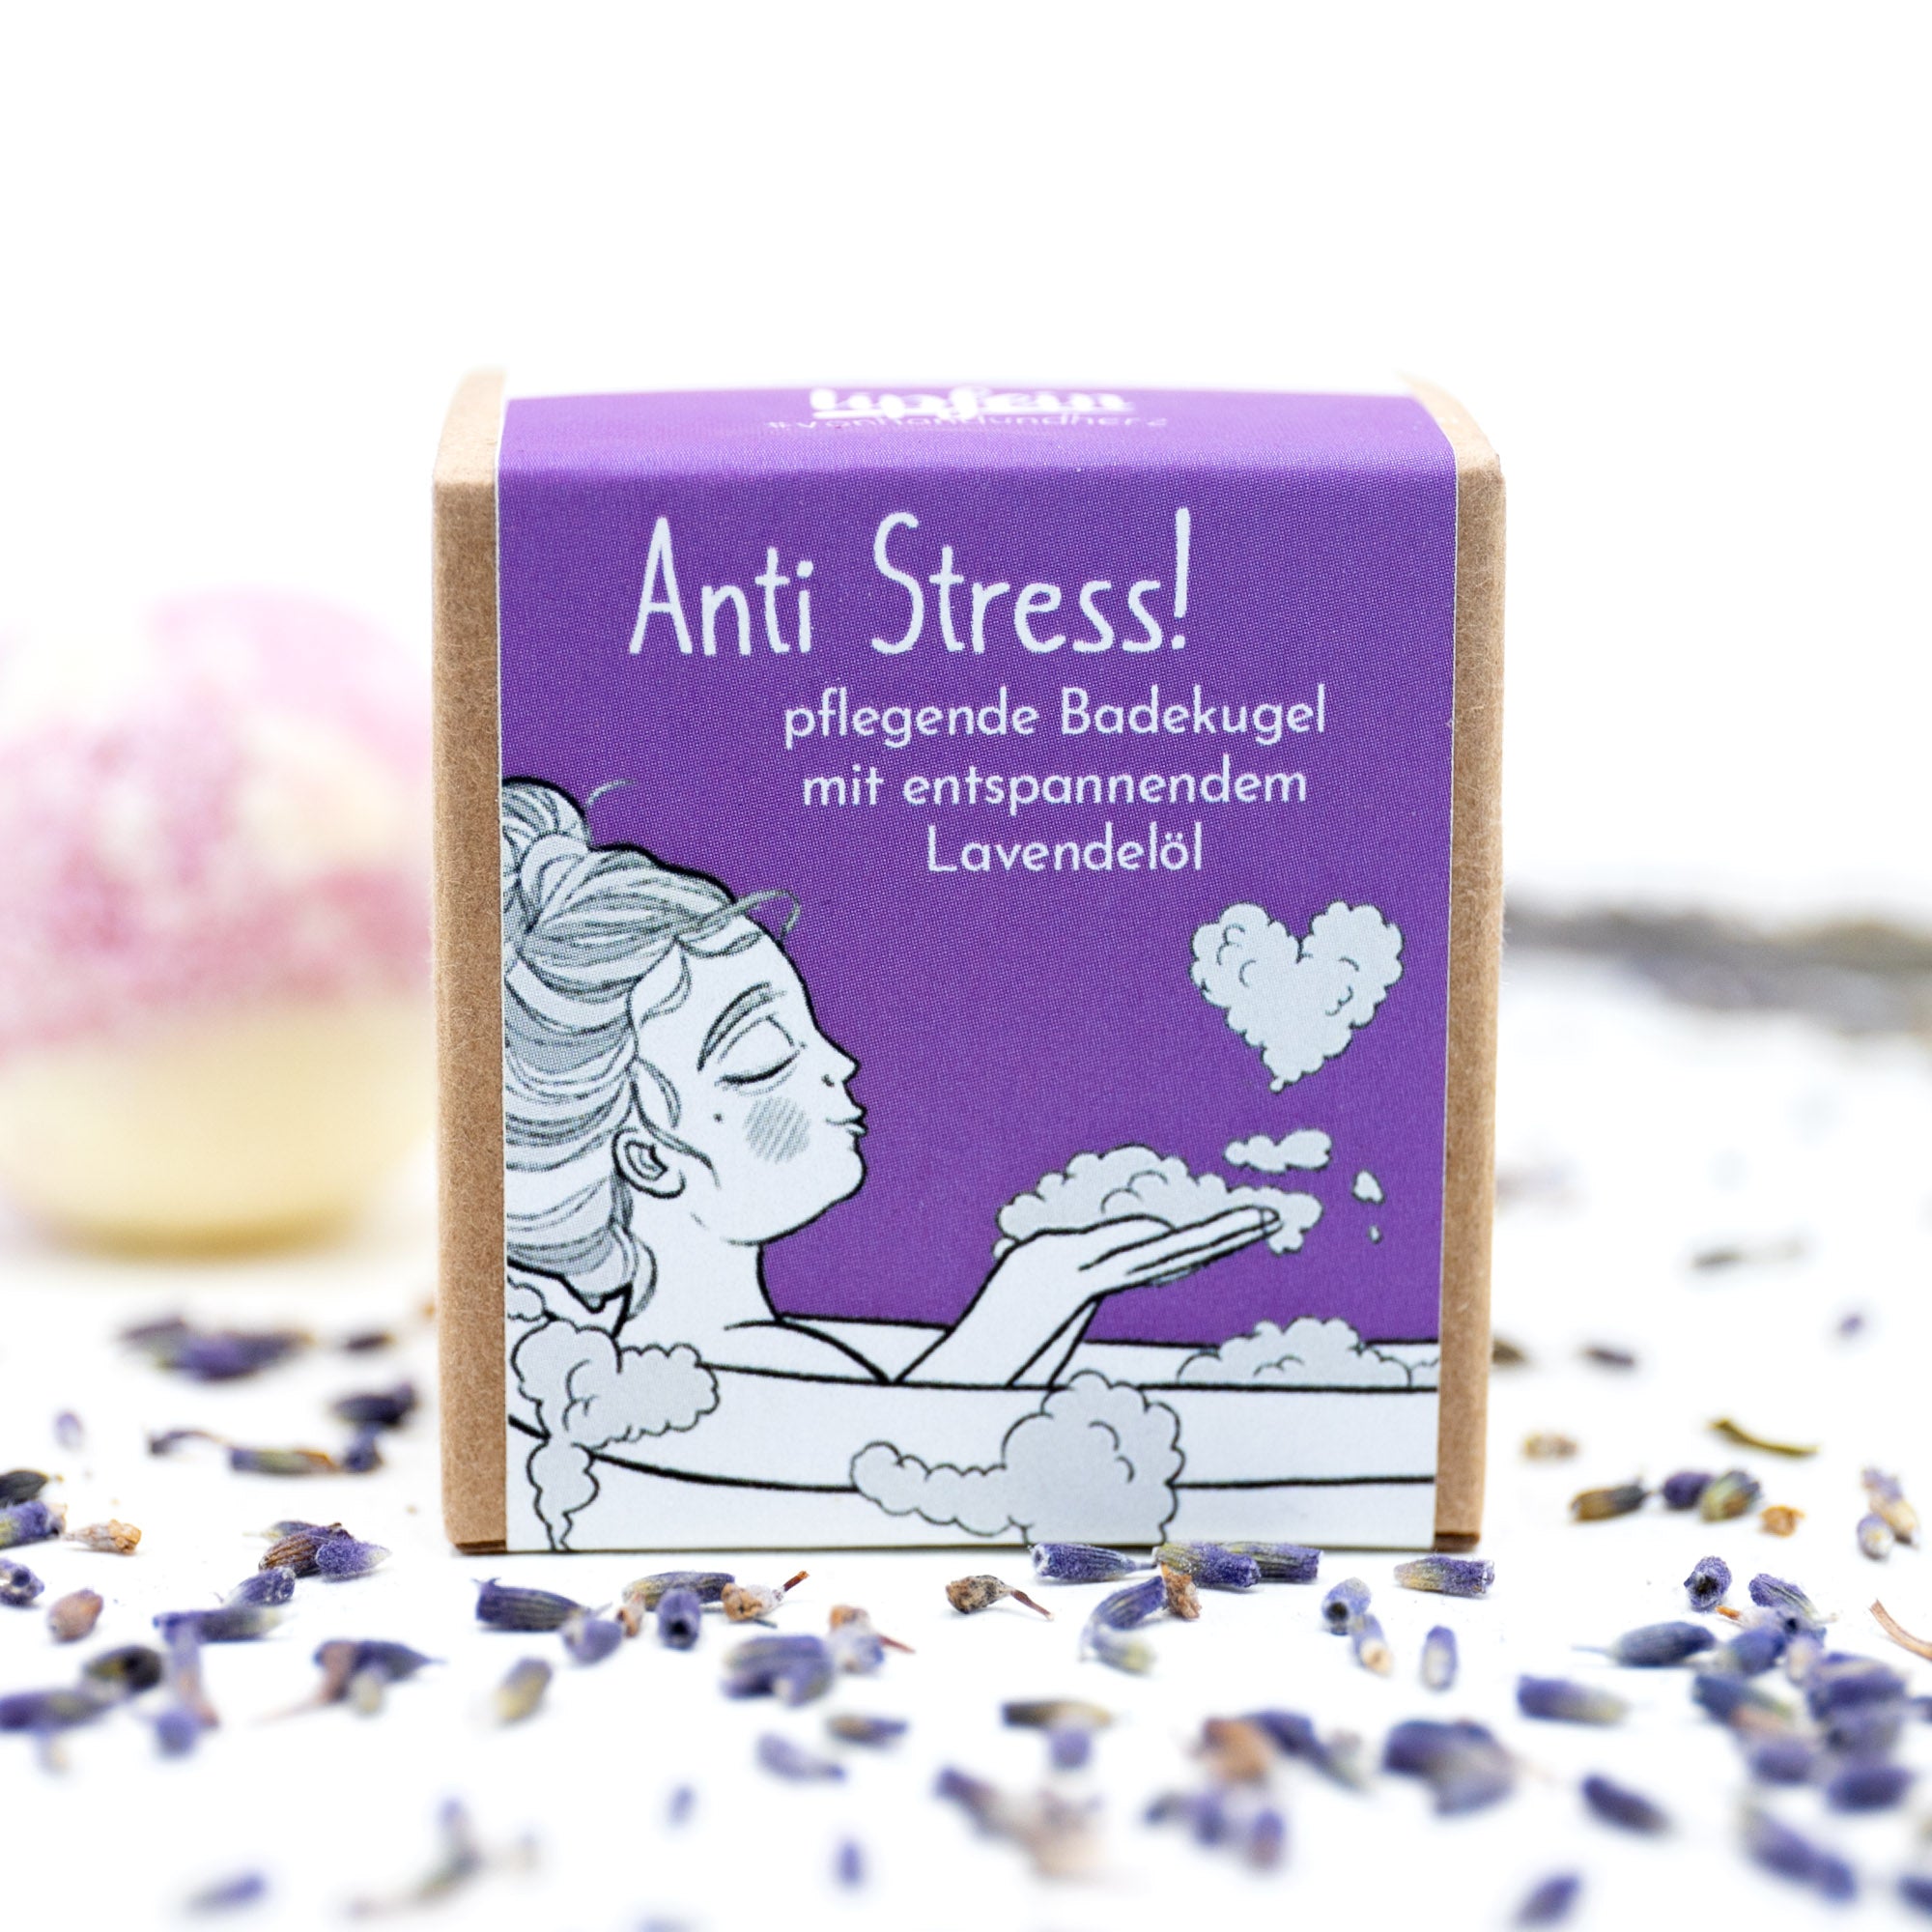 Lipfein Anti Stress! - Pflegende Badekugel Lavendel